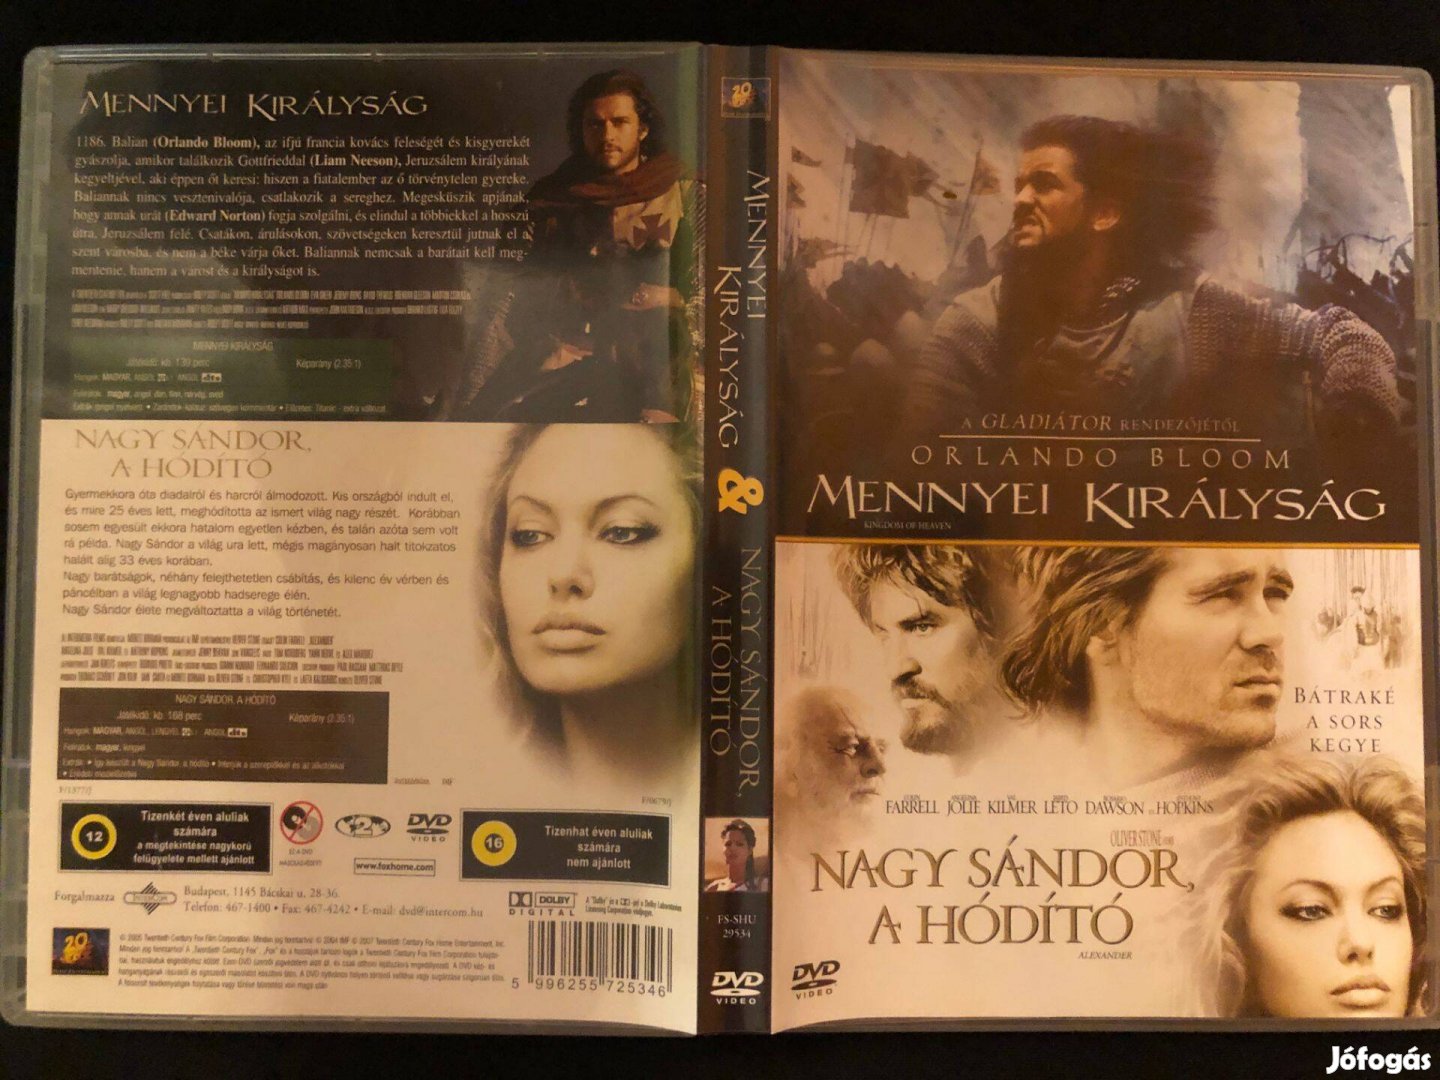 Mennyei királyság + Nagy Sándor, a hódító DVD (twinpack, Orlando Bloom